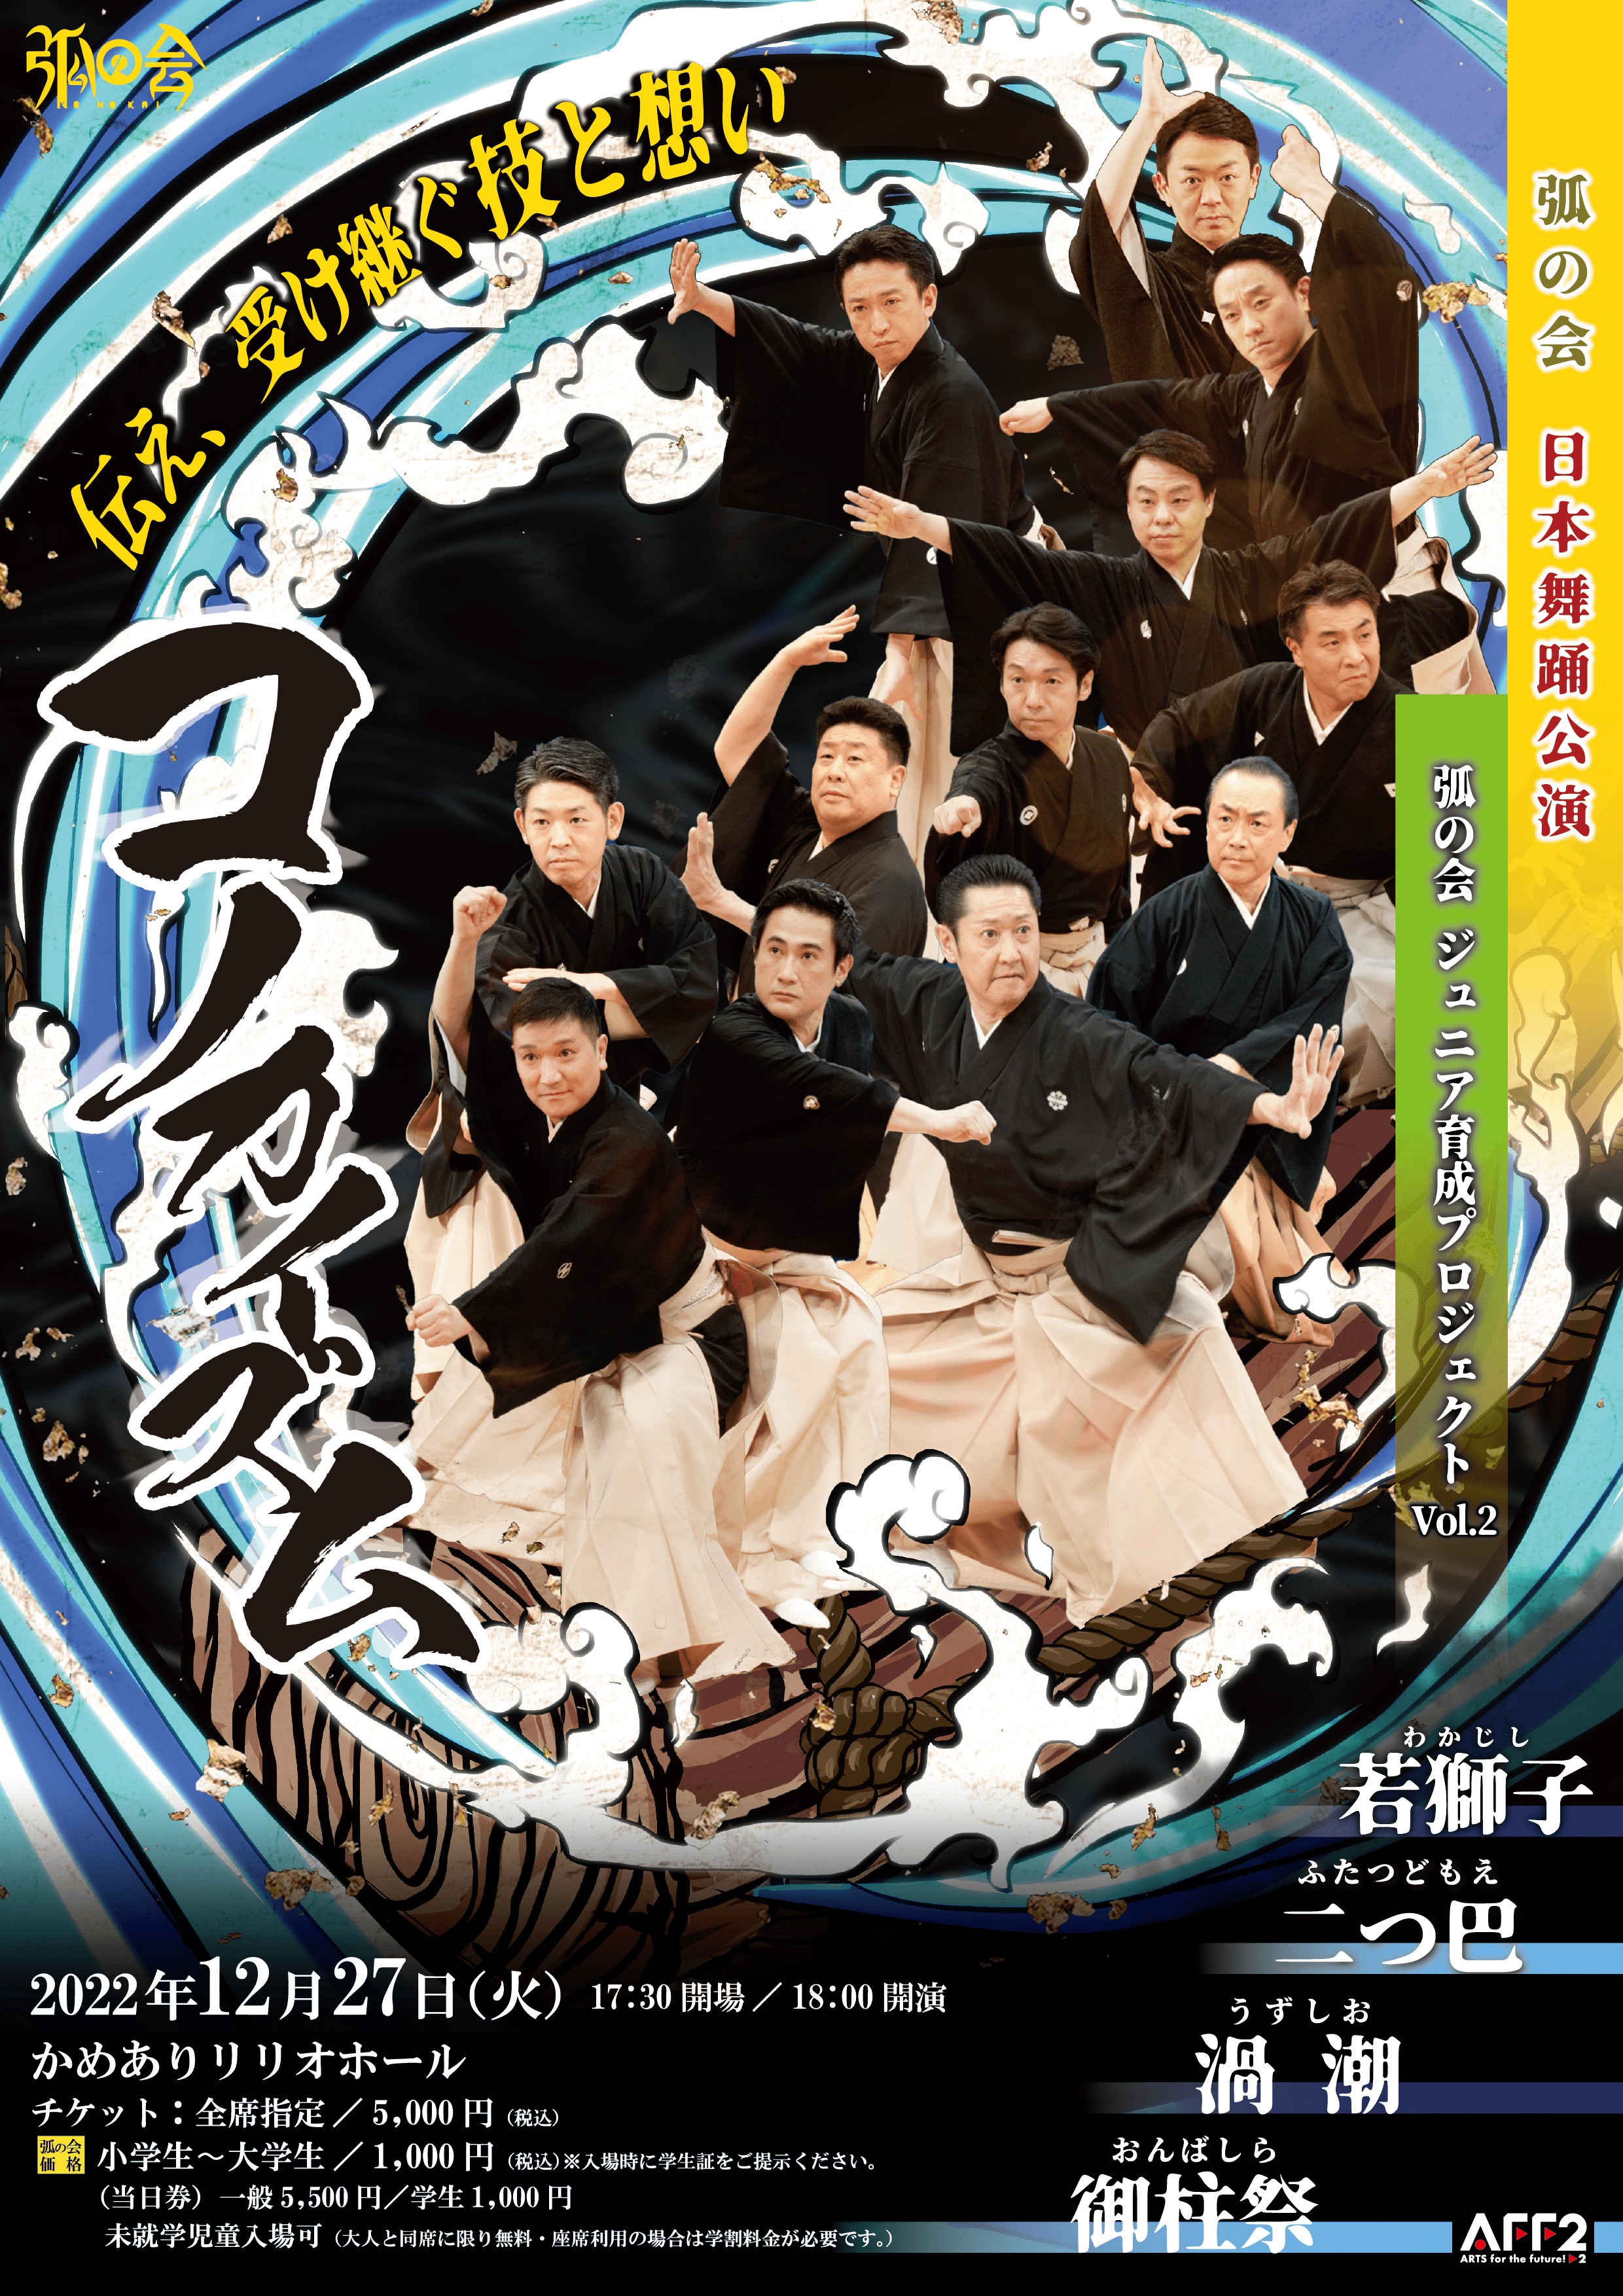 日本舞踊の普及と新たな創造に挑む 男性舞踊家ユニット〈弧の会〉 後進